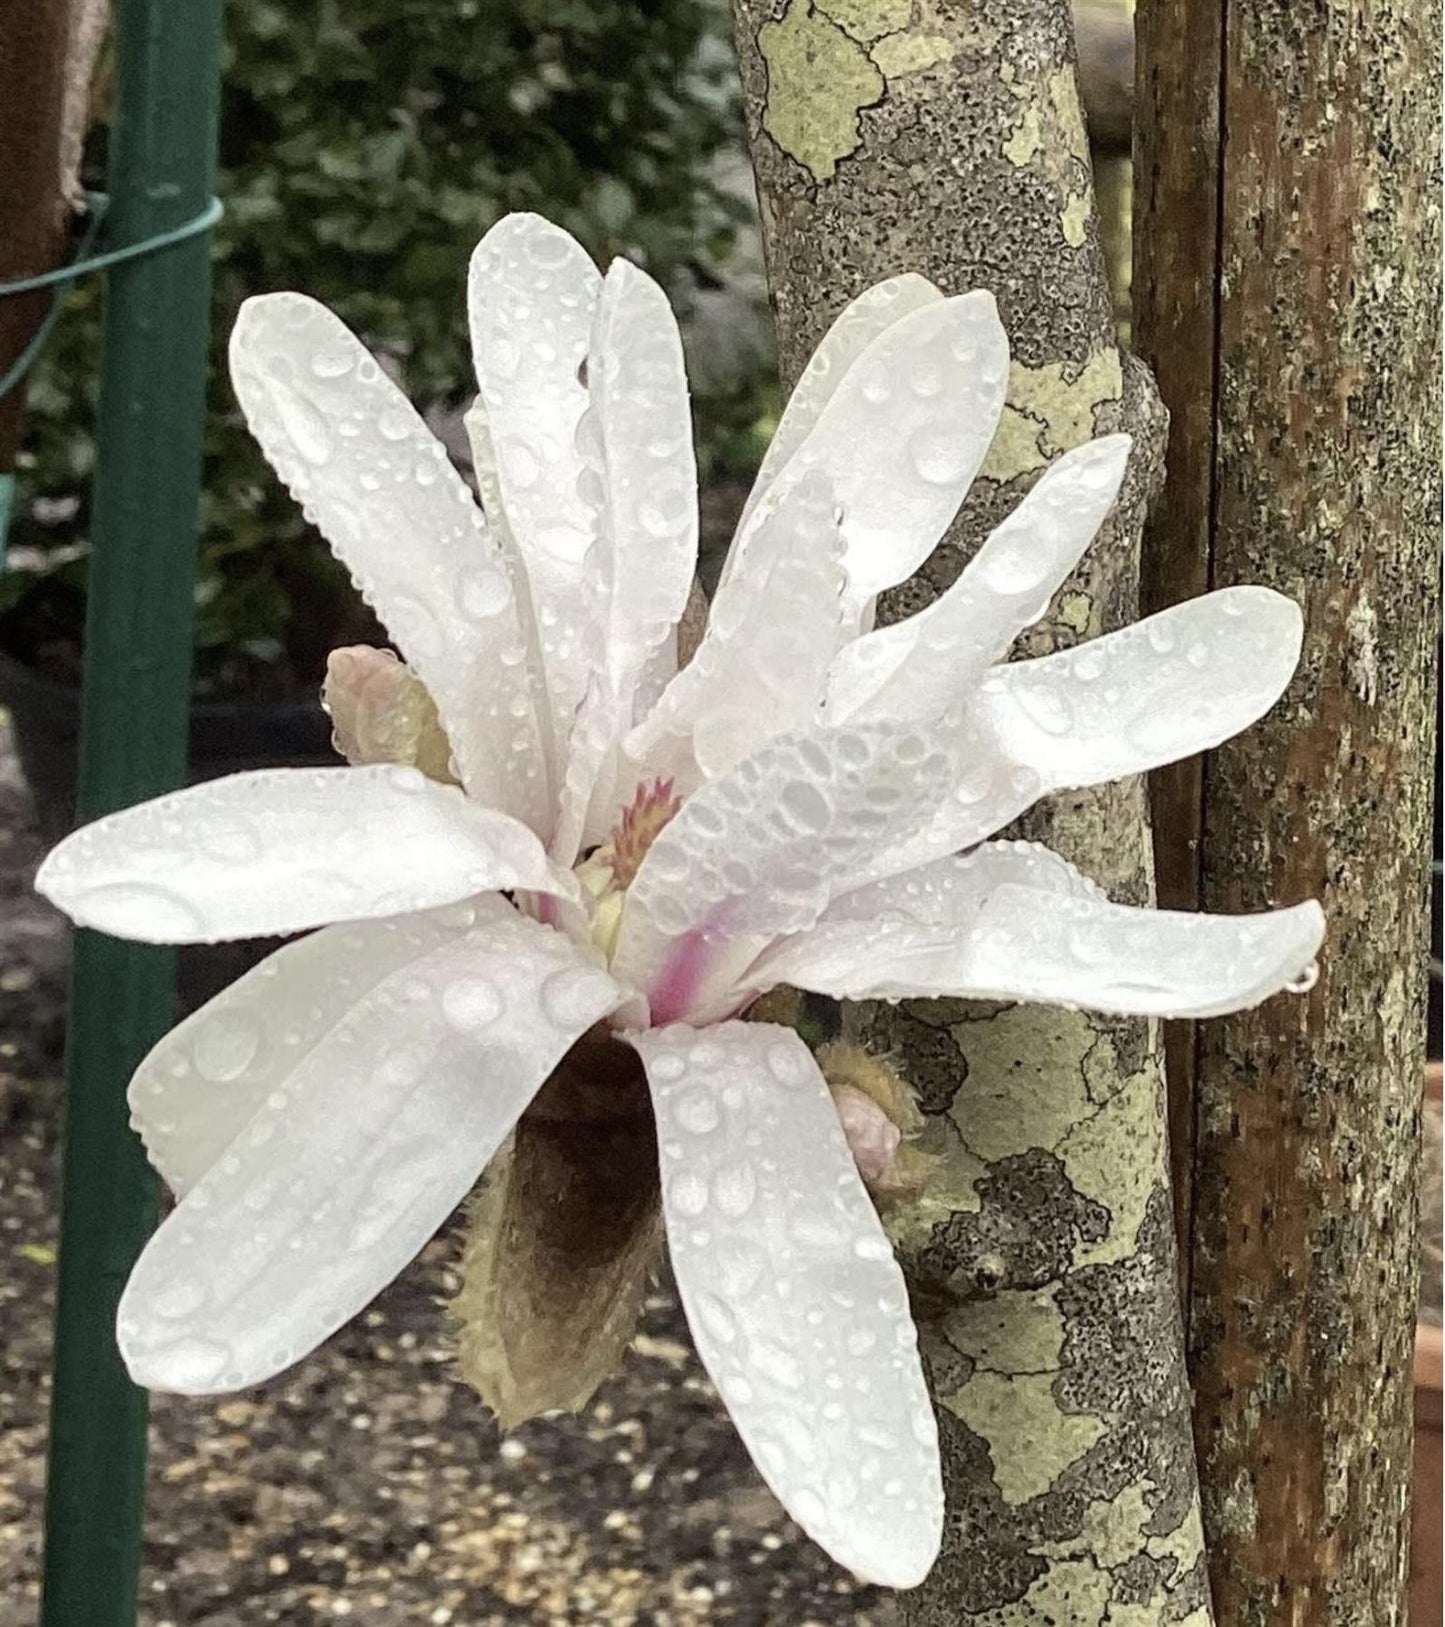 Magnolia Stellata - Bush - 140-150cm -10lt